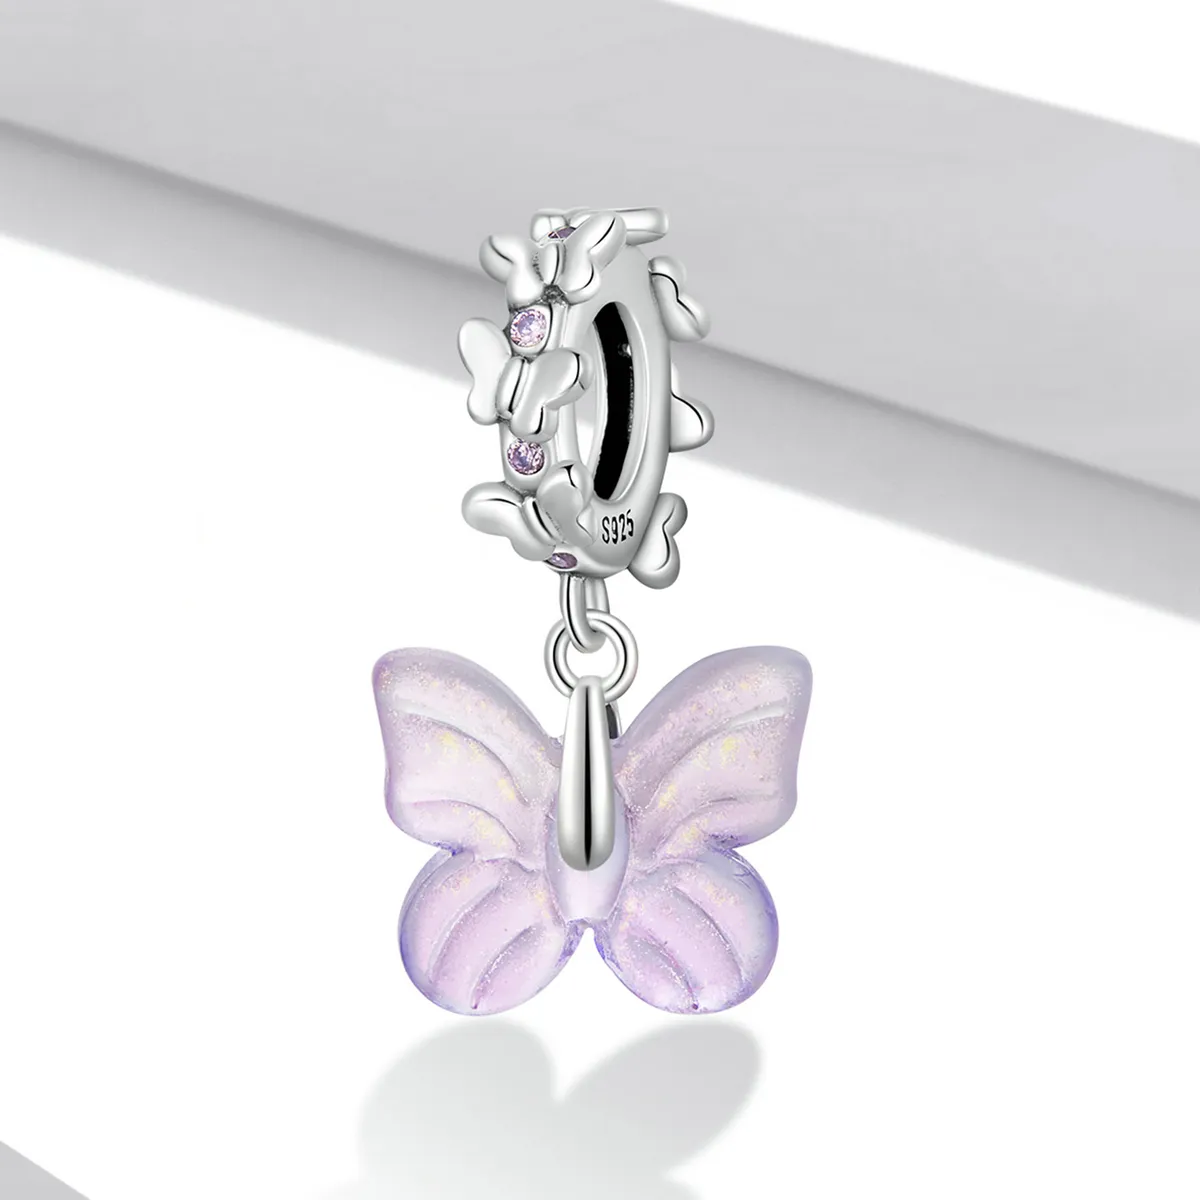 Pandantiv stil Pandora cu fluture din sticlă - SCC2087